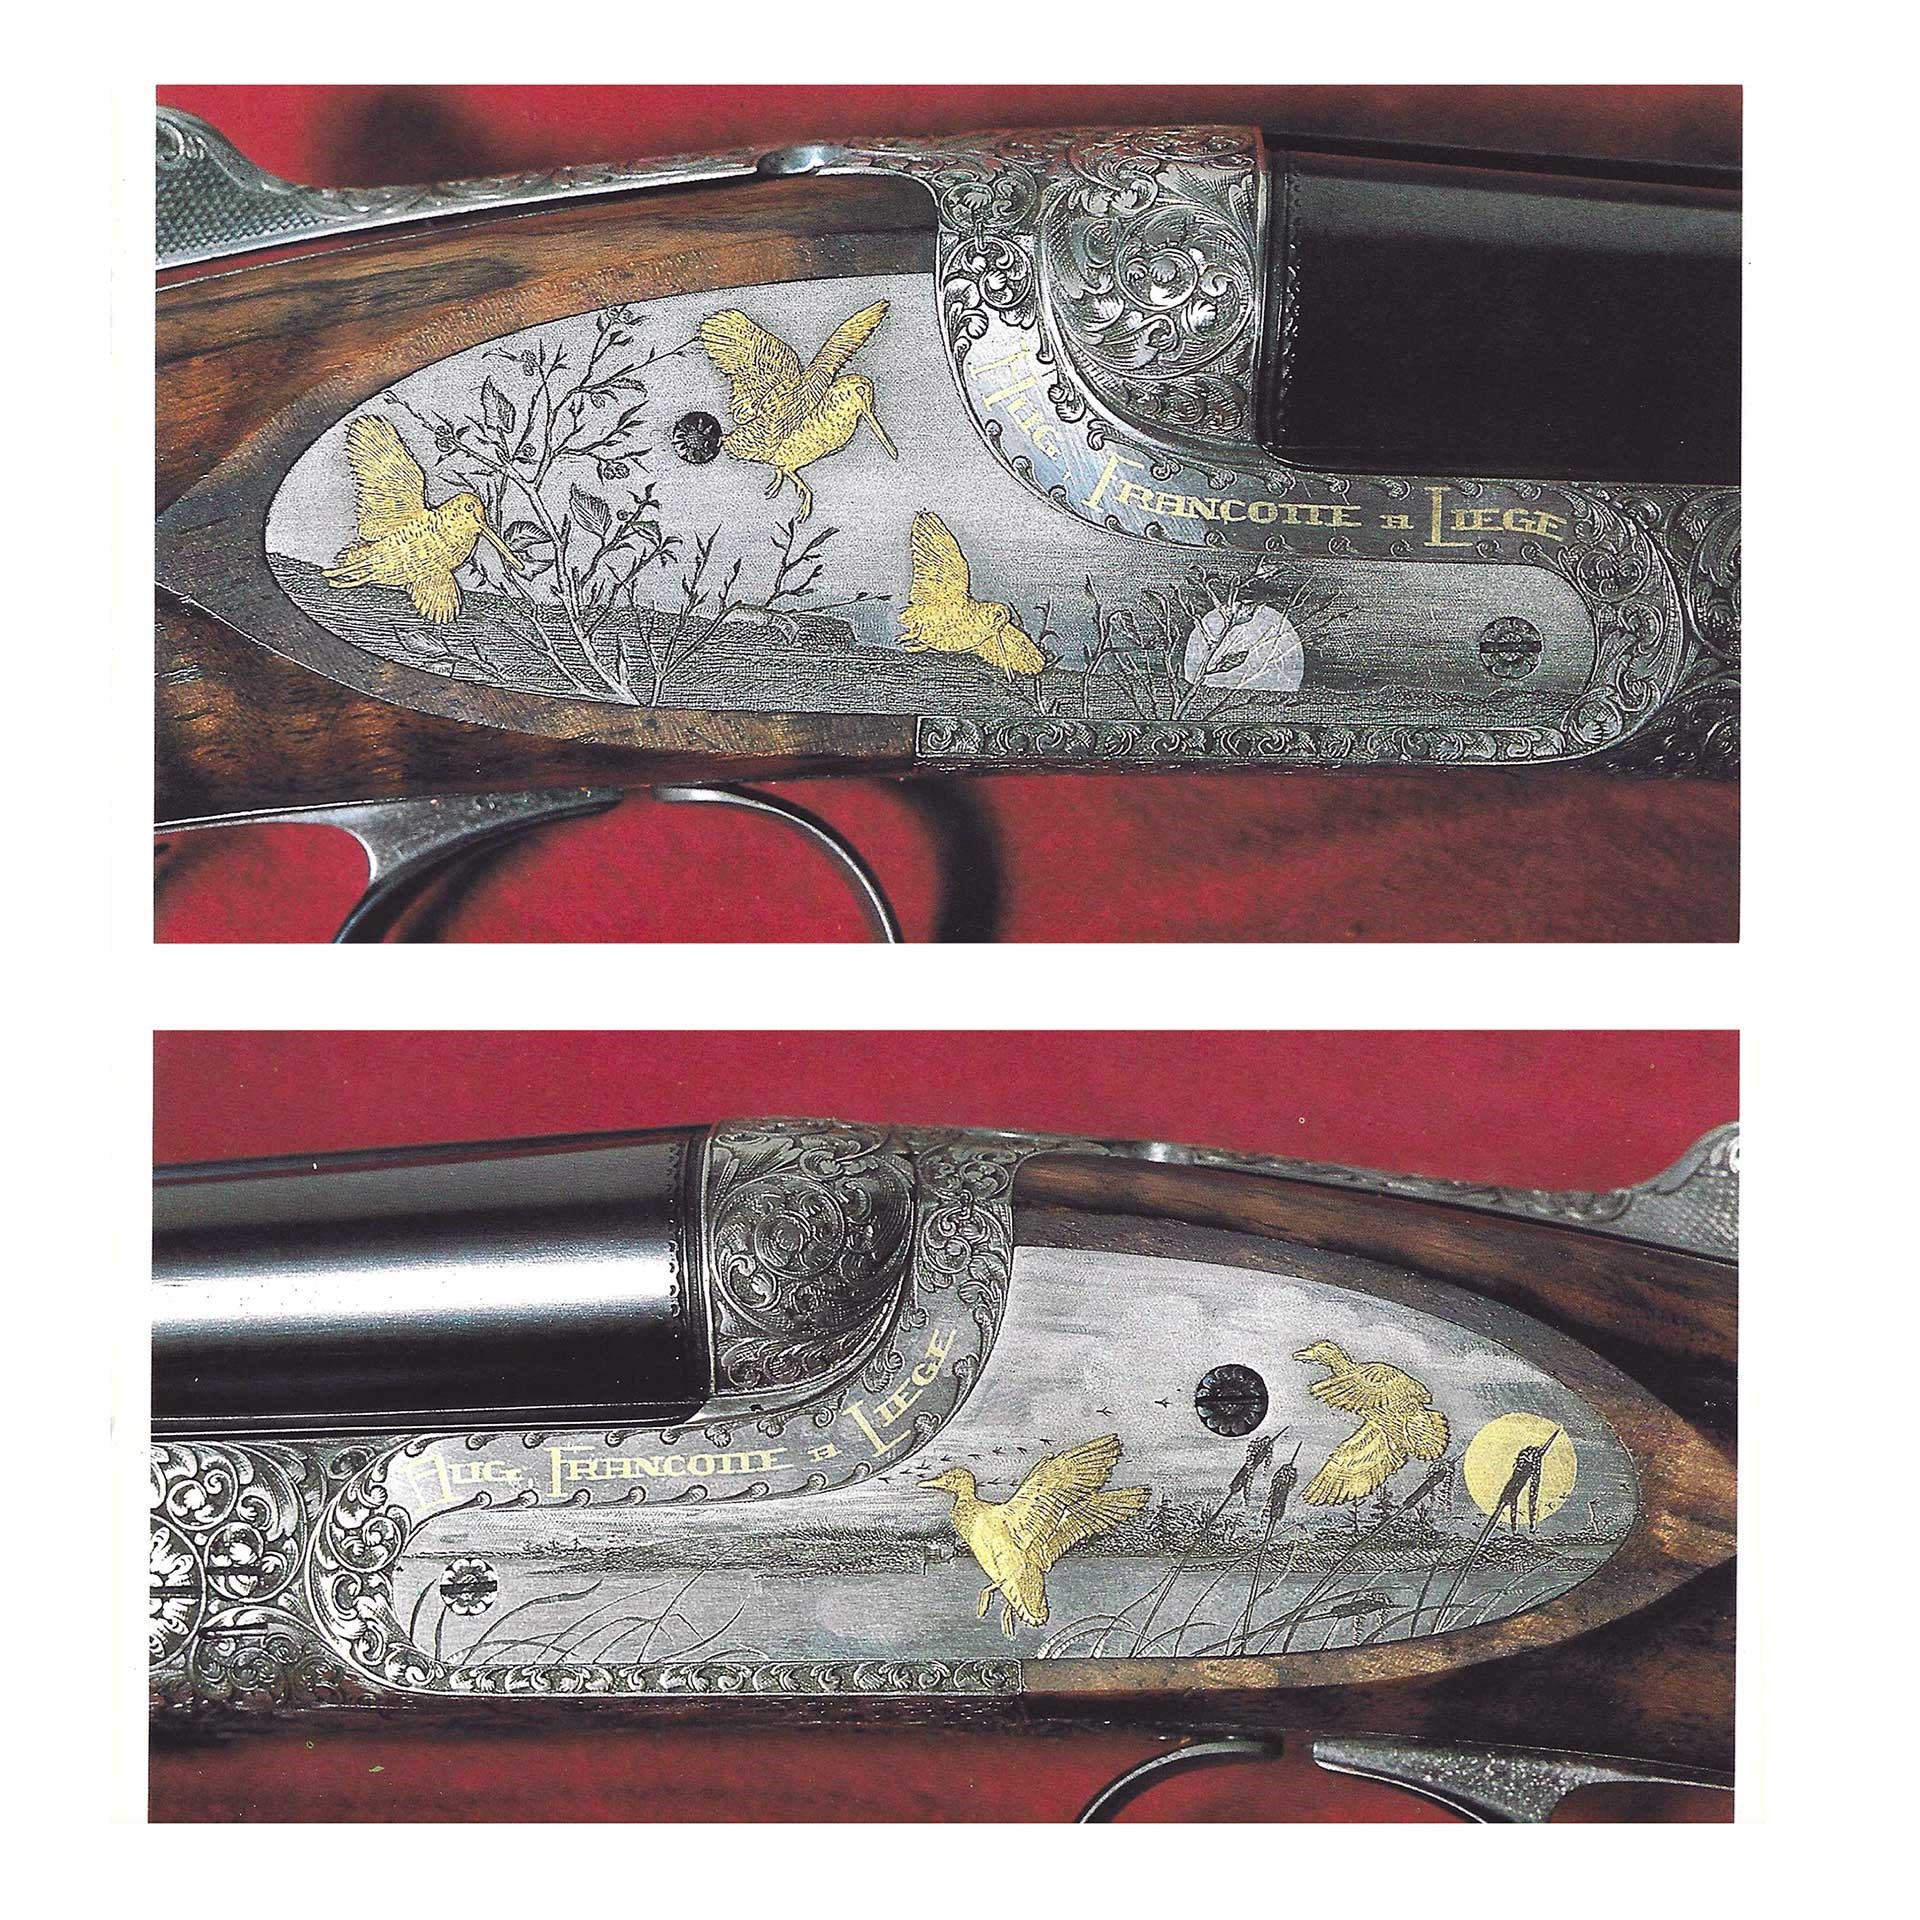 Engraved sideplates on a Francotte shotgun.